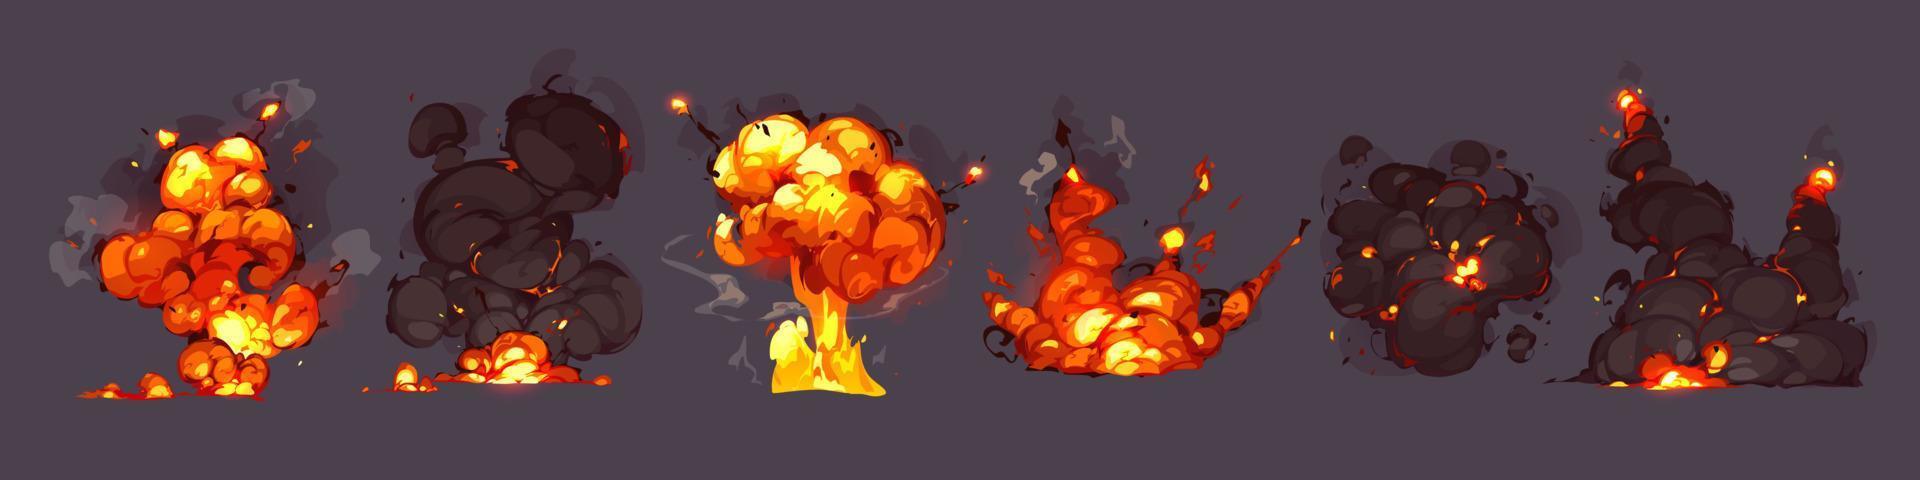 bomba explosioner, sprängningar med brand och rök moln vektor